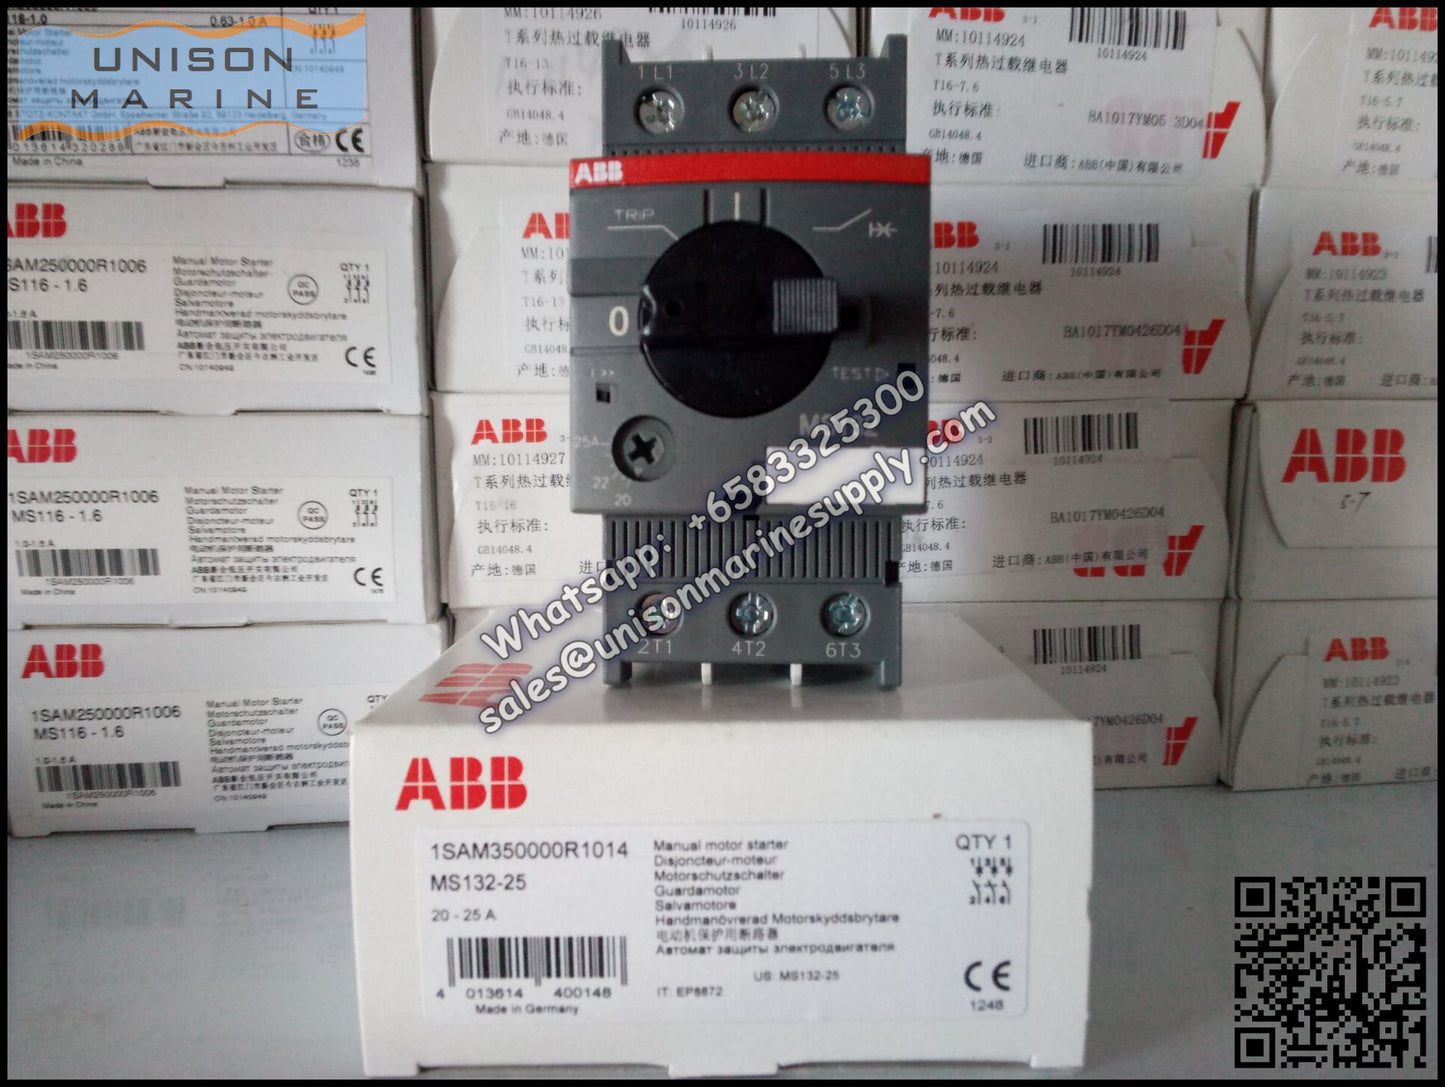 ABB Manual Motor Starter MS132-25 1SAM350000R1014